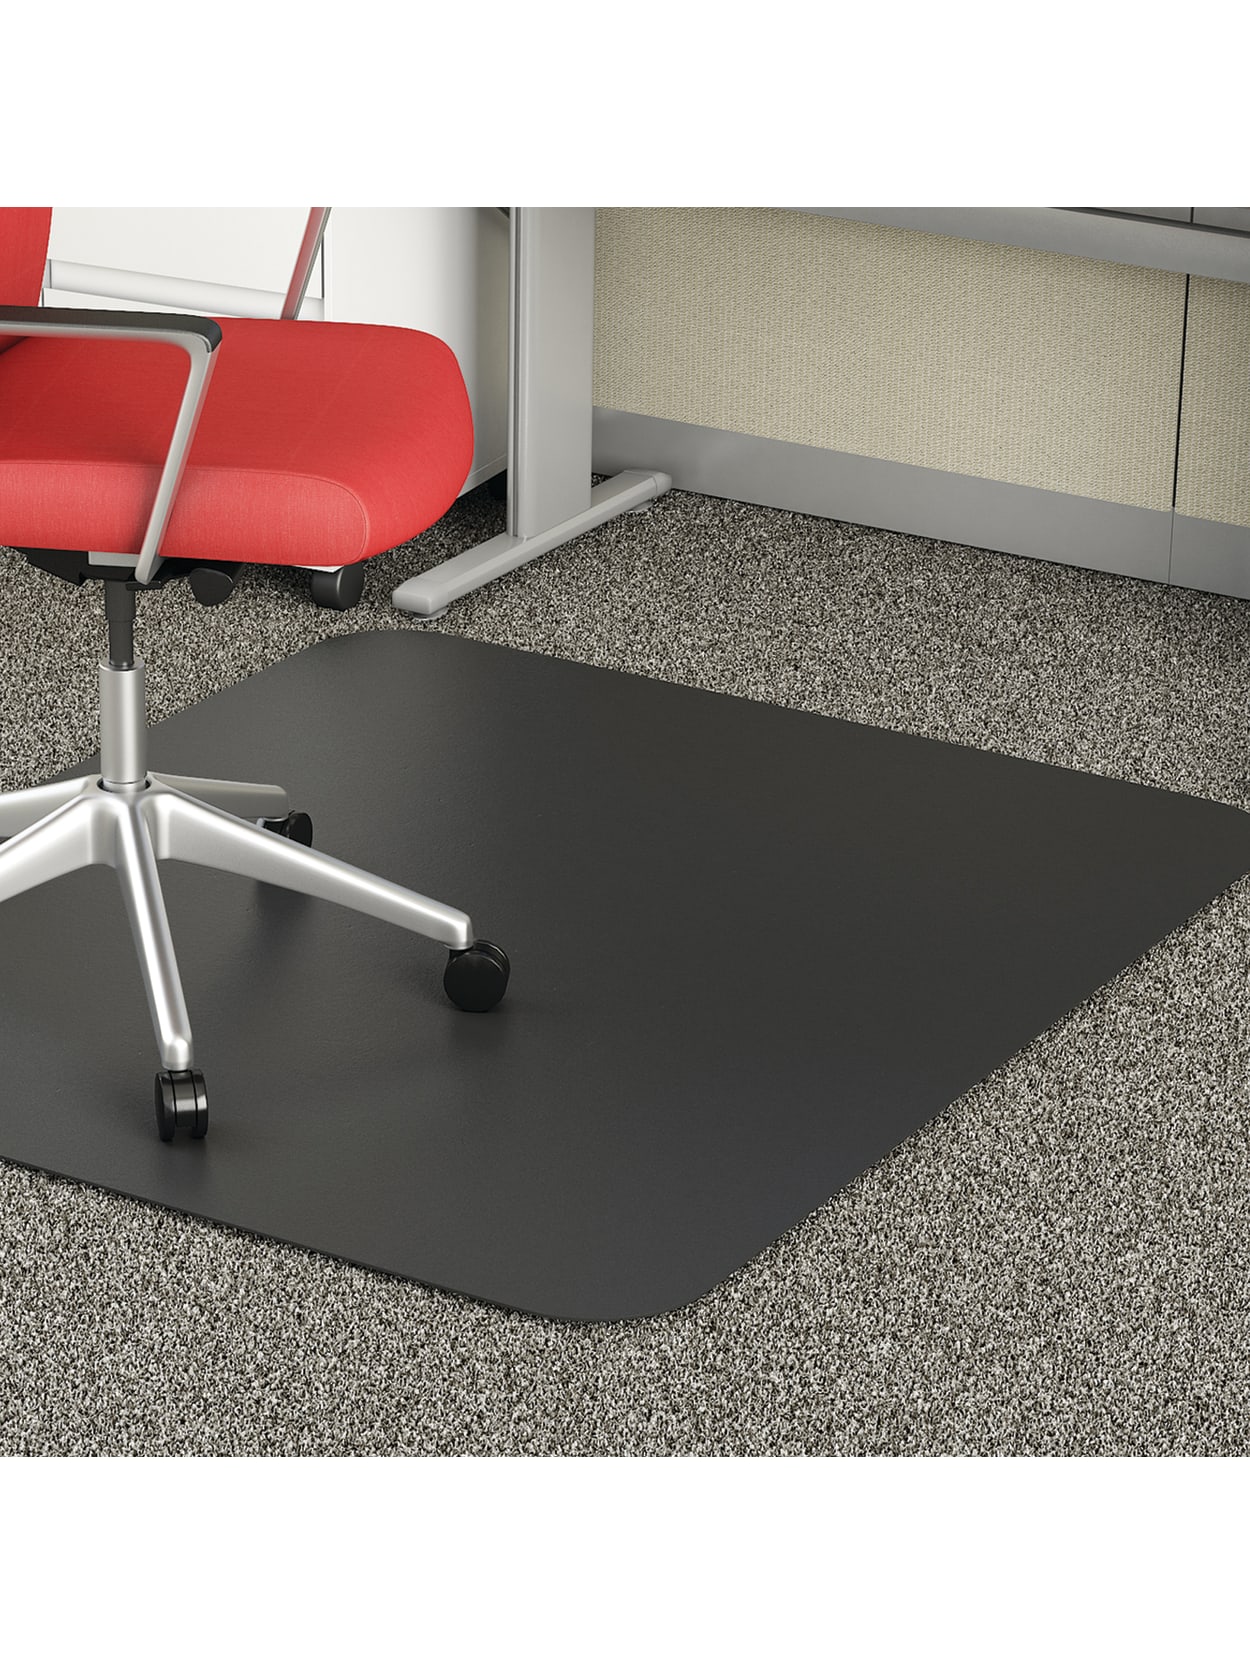 Deflect O Mat For Medium Carpet 36 X 48 Office Depot